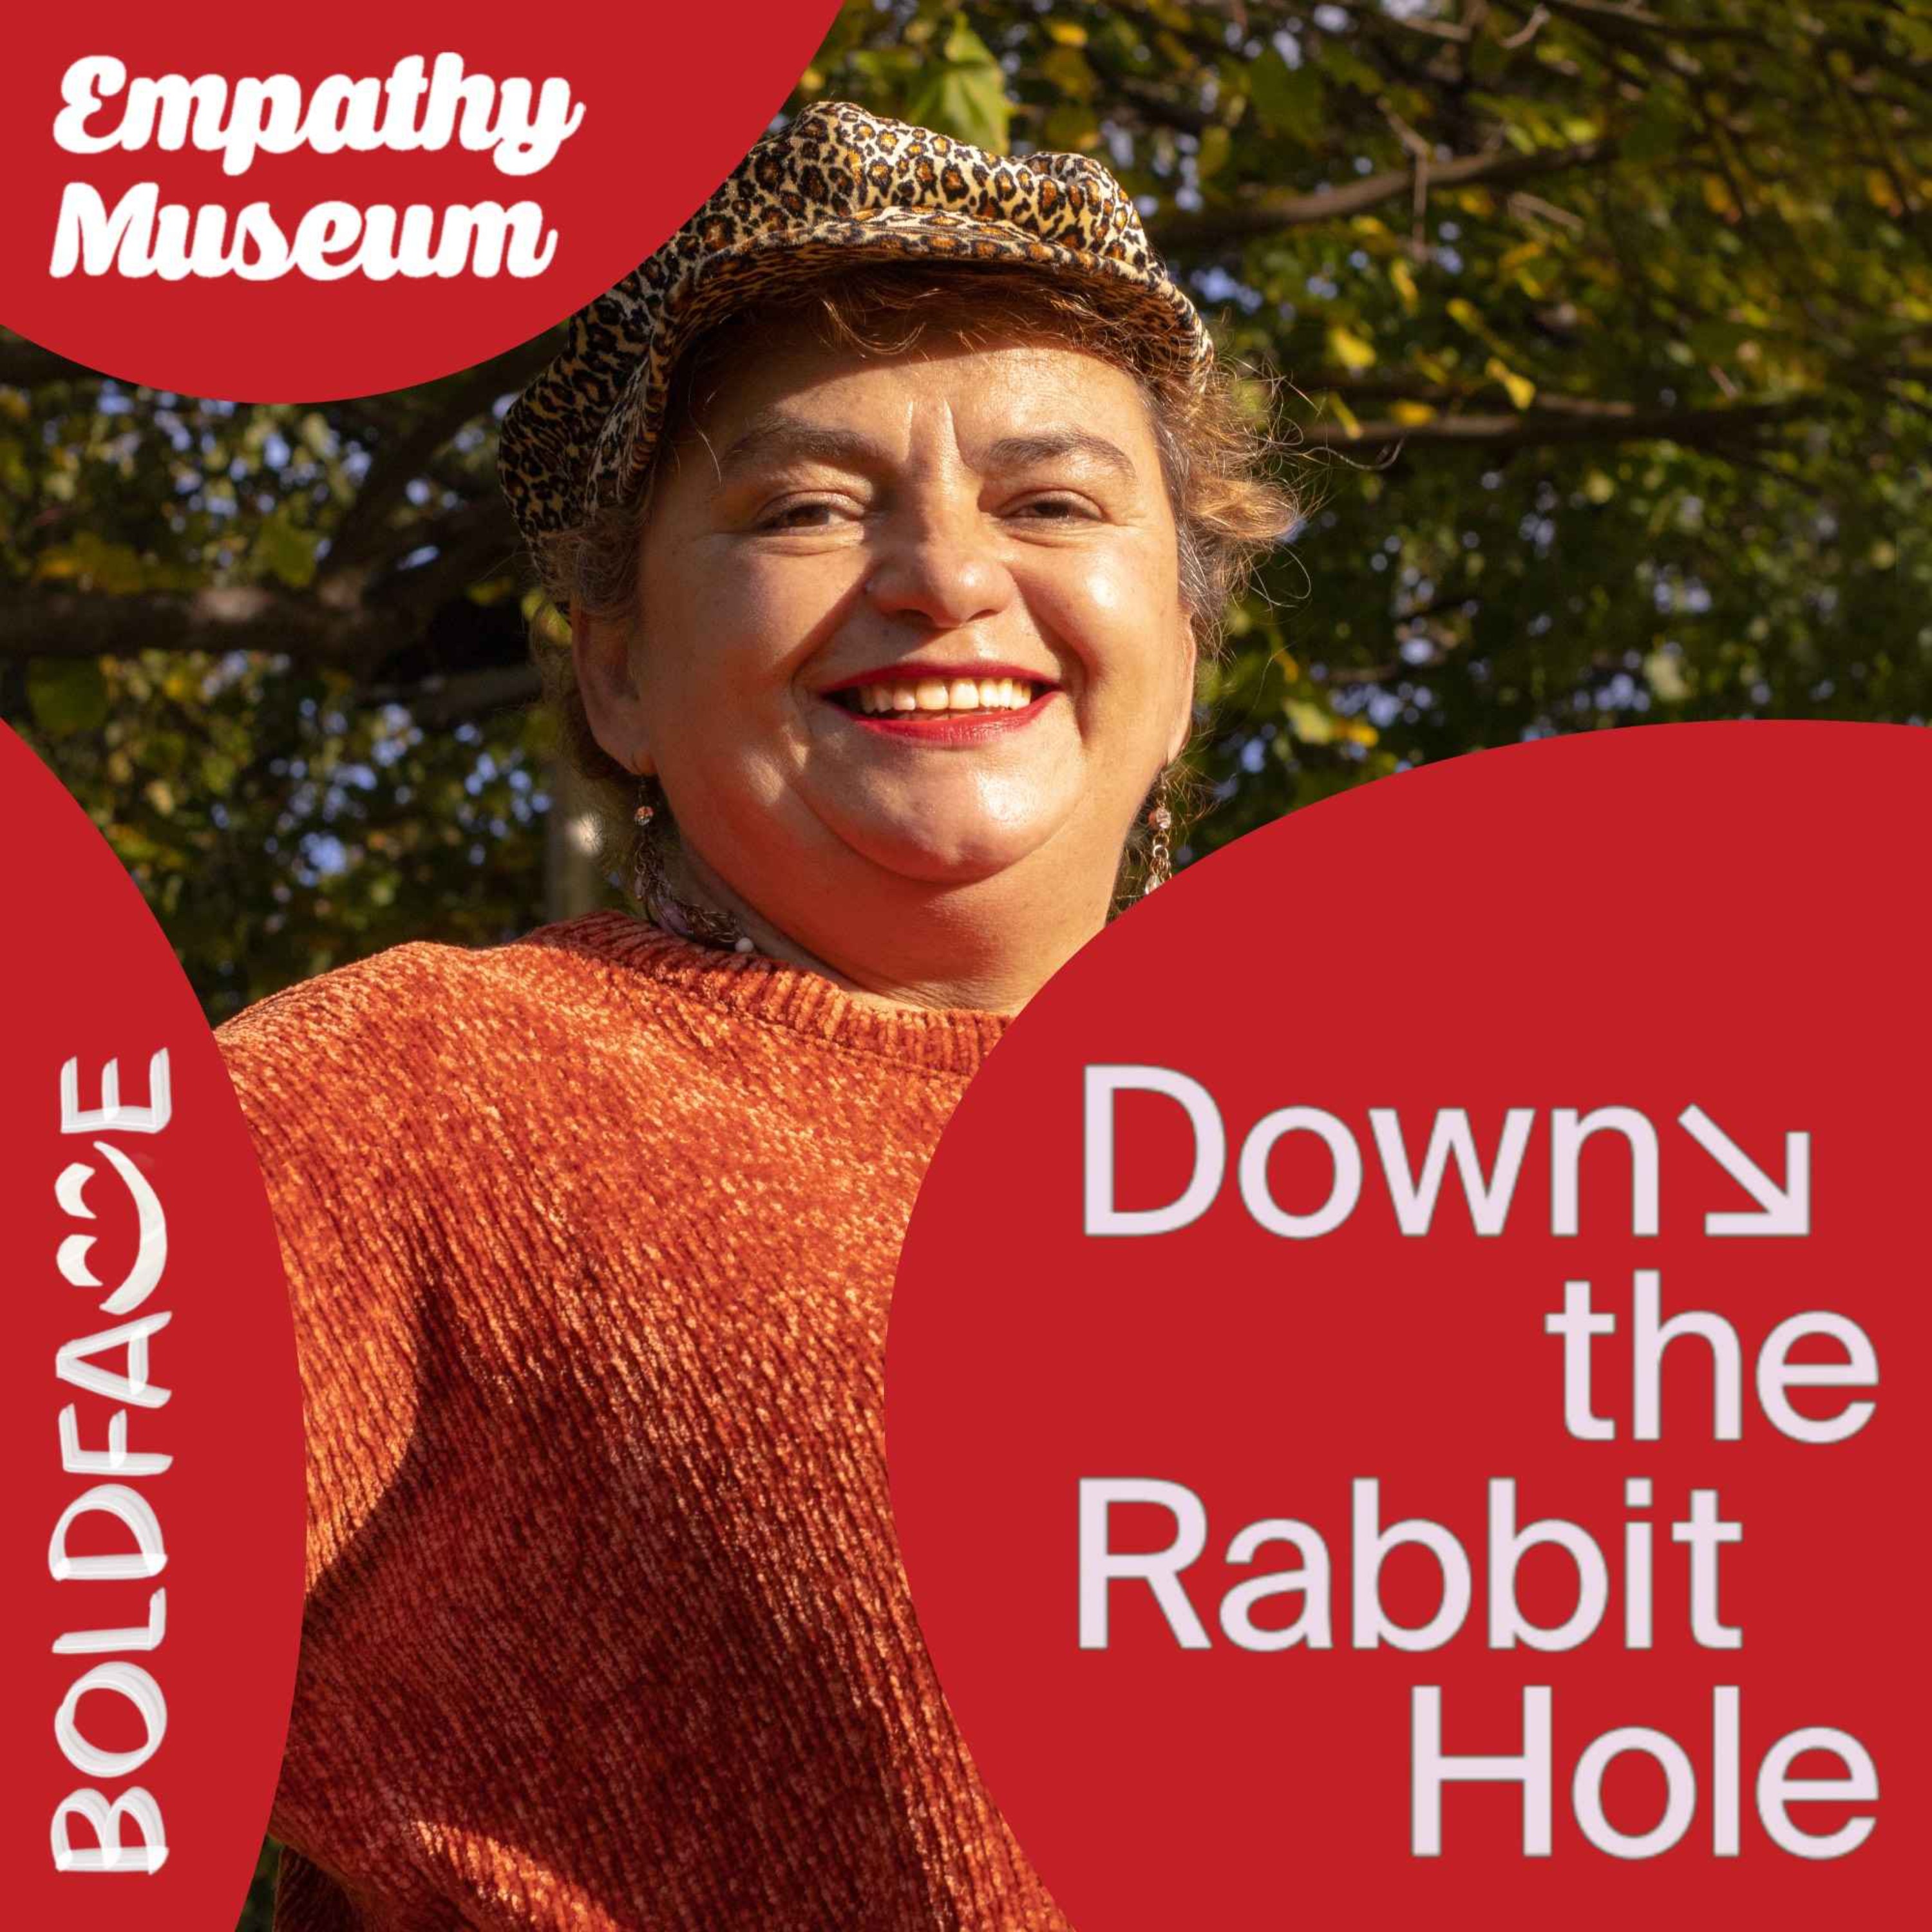 Down the Rabbit Hole #1 – Elizabeth's letter